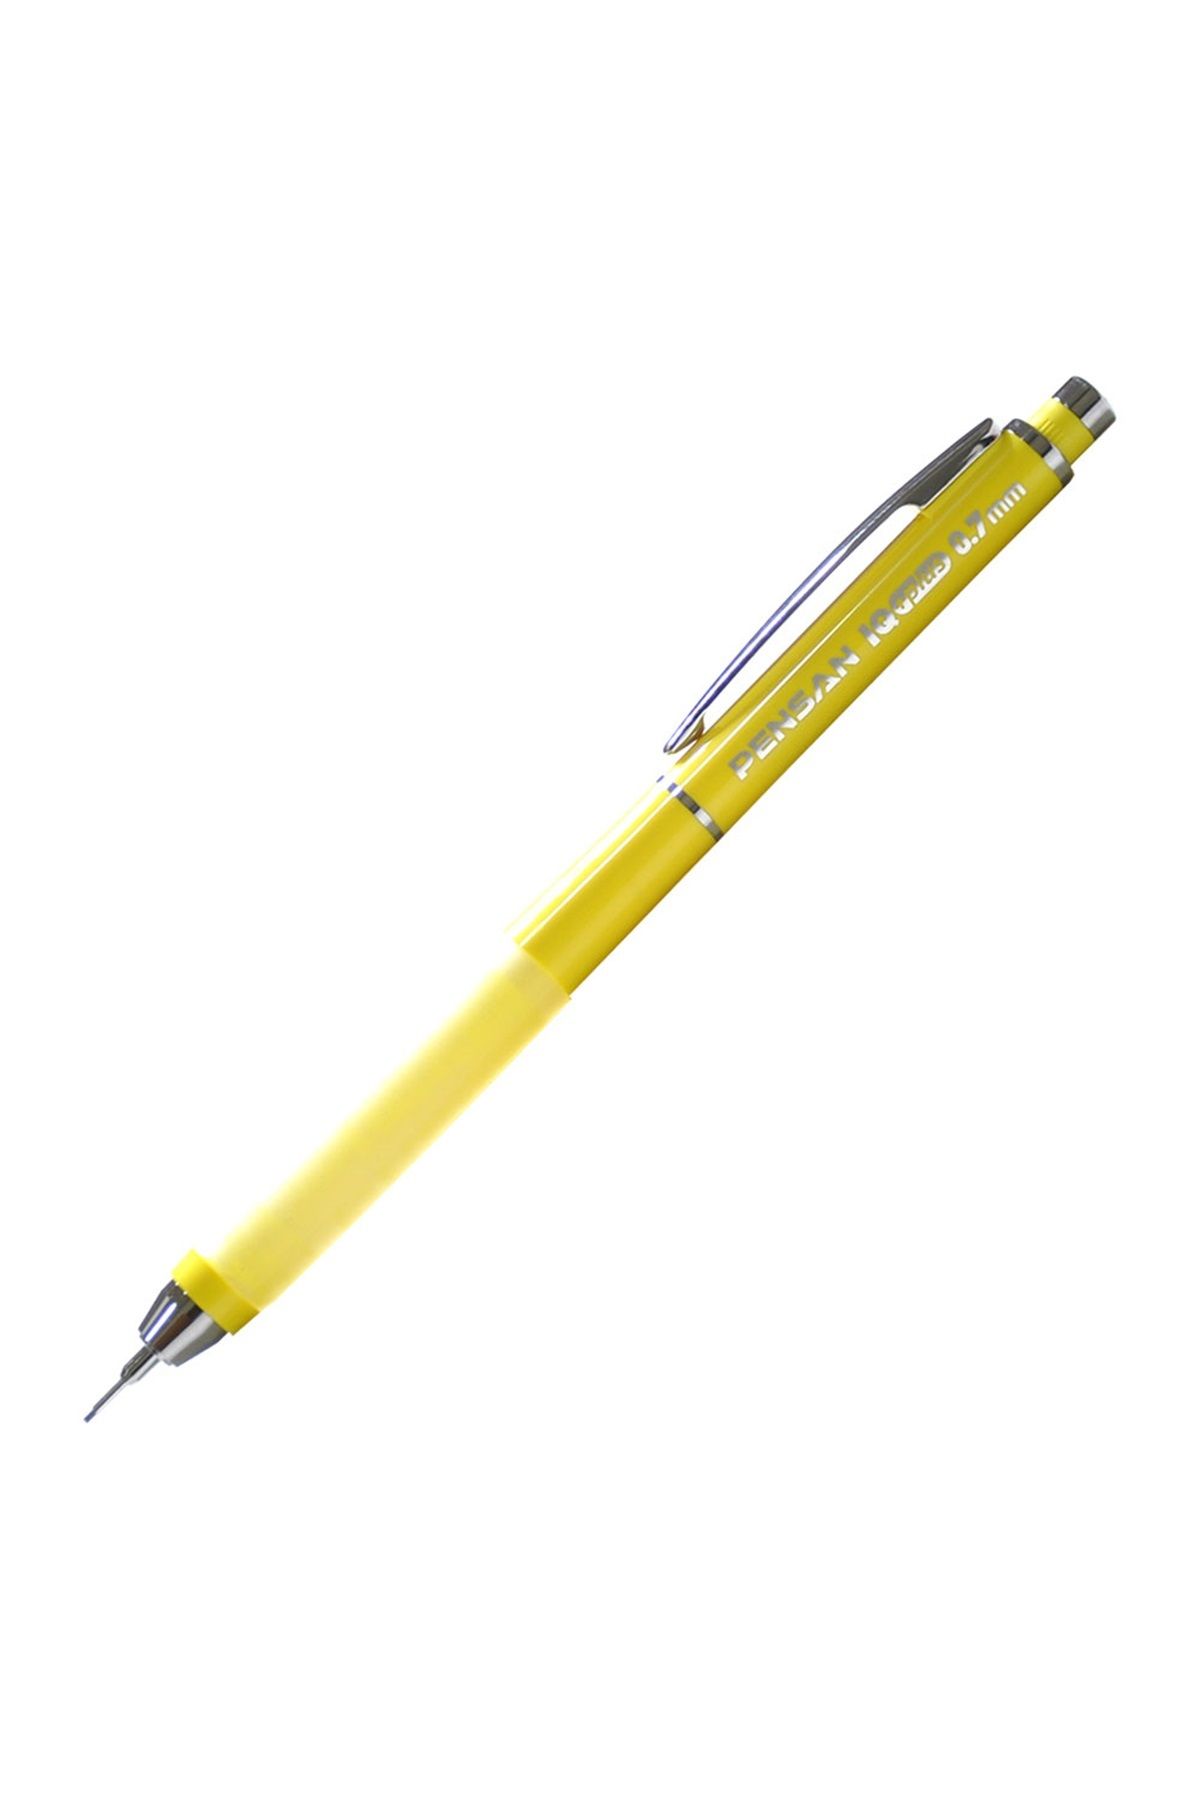 Pensan Iq Plus Versatil Kalem 0.7 - Sarı